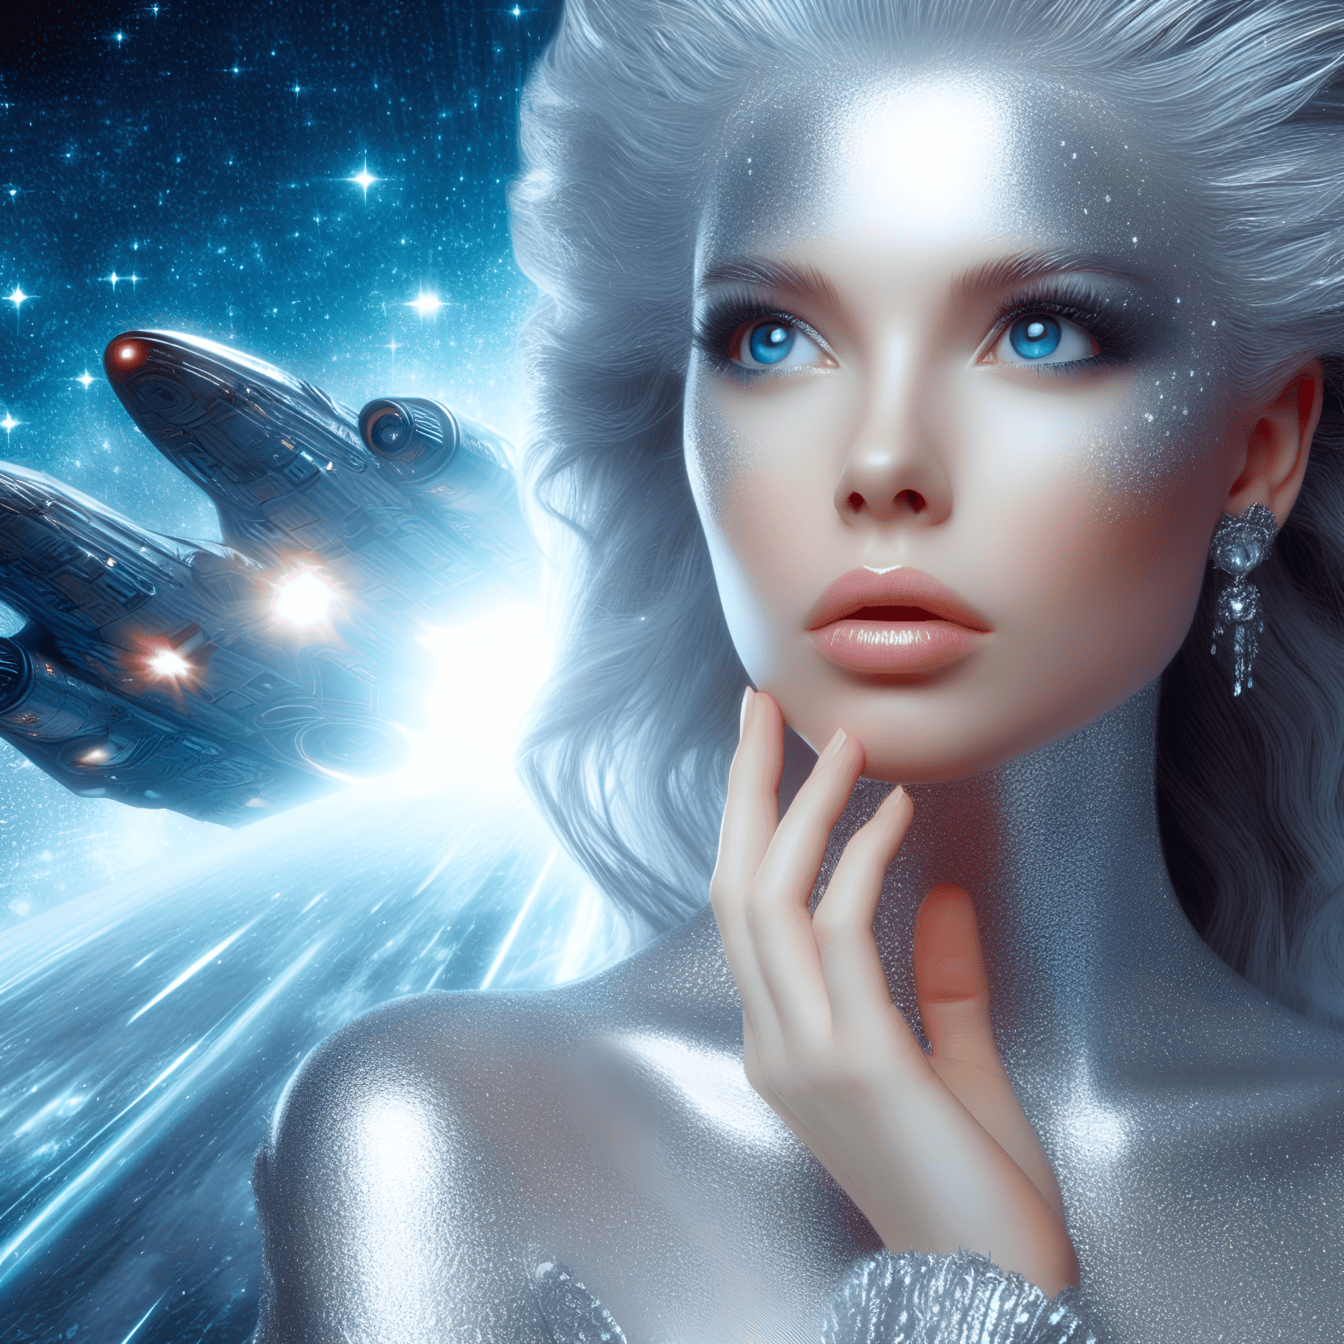 Portret bogini obcej wyższej istoty ze statkiem kosmicznym w tle